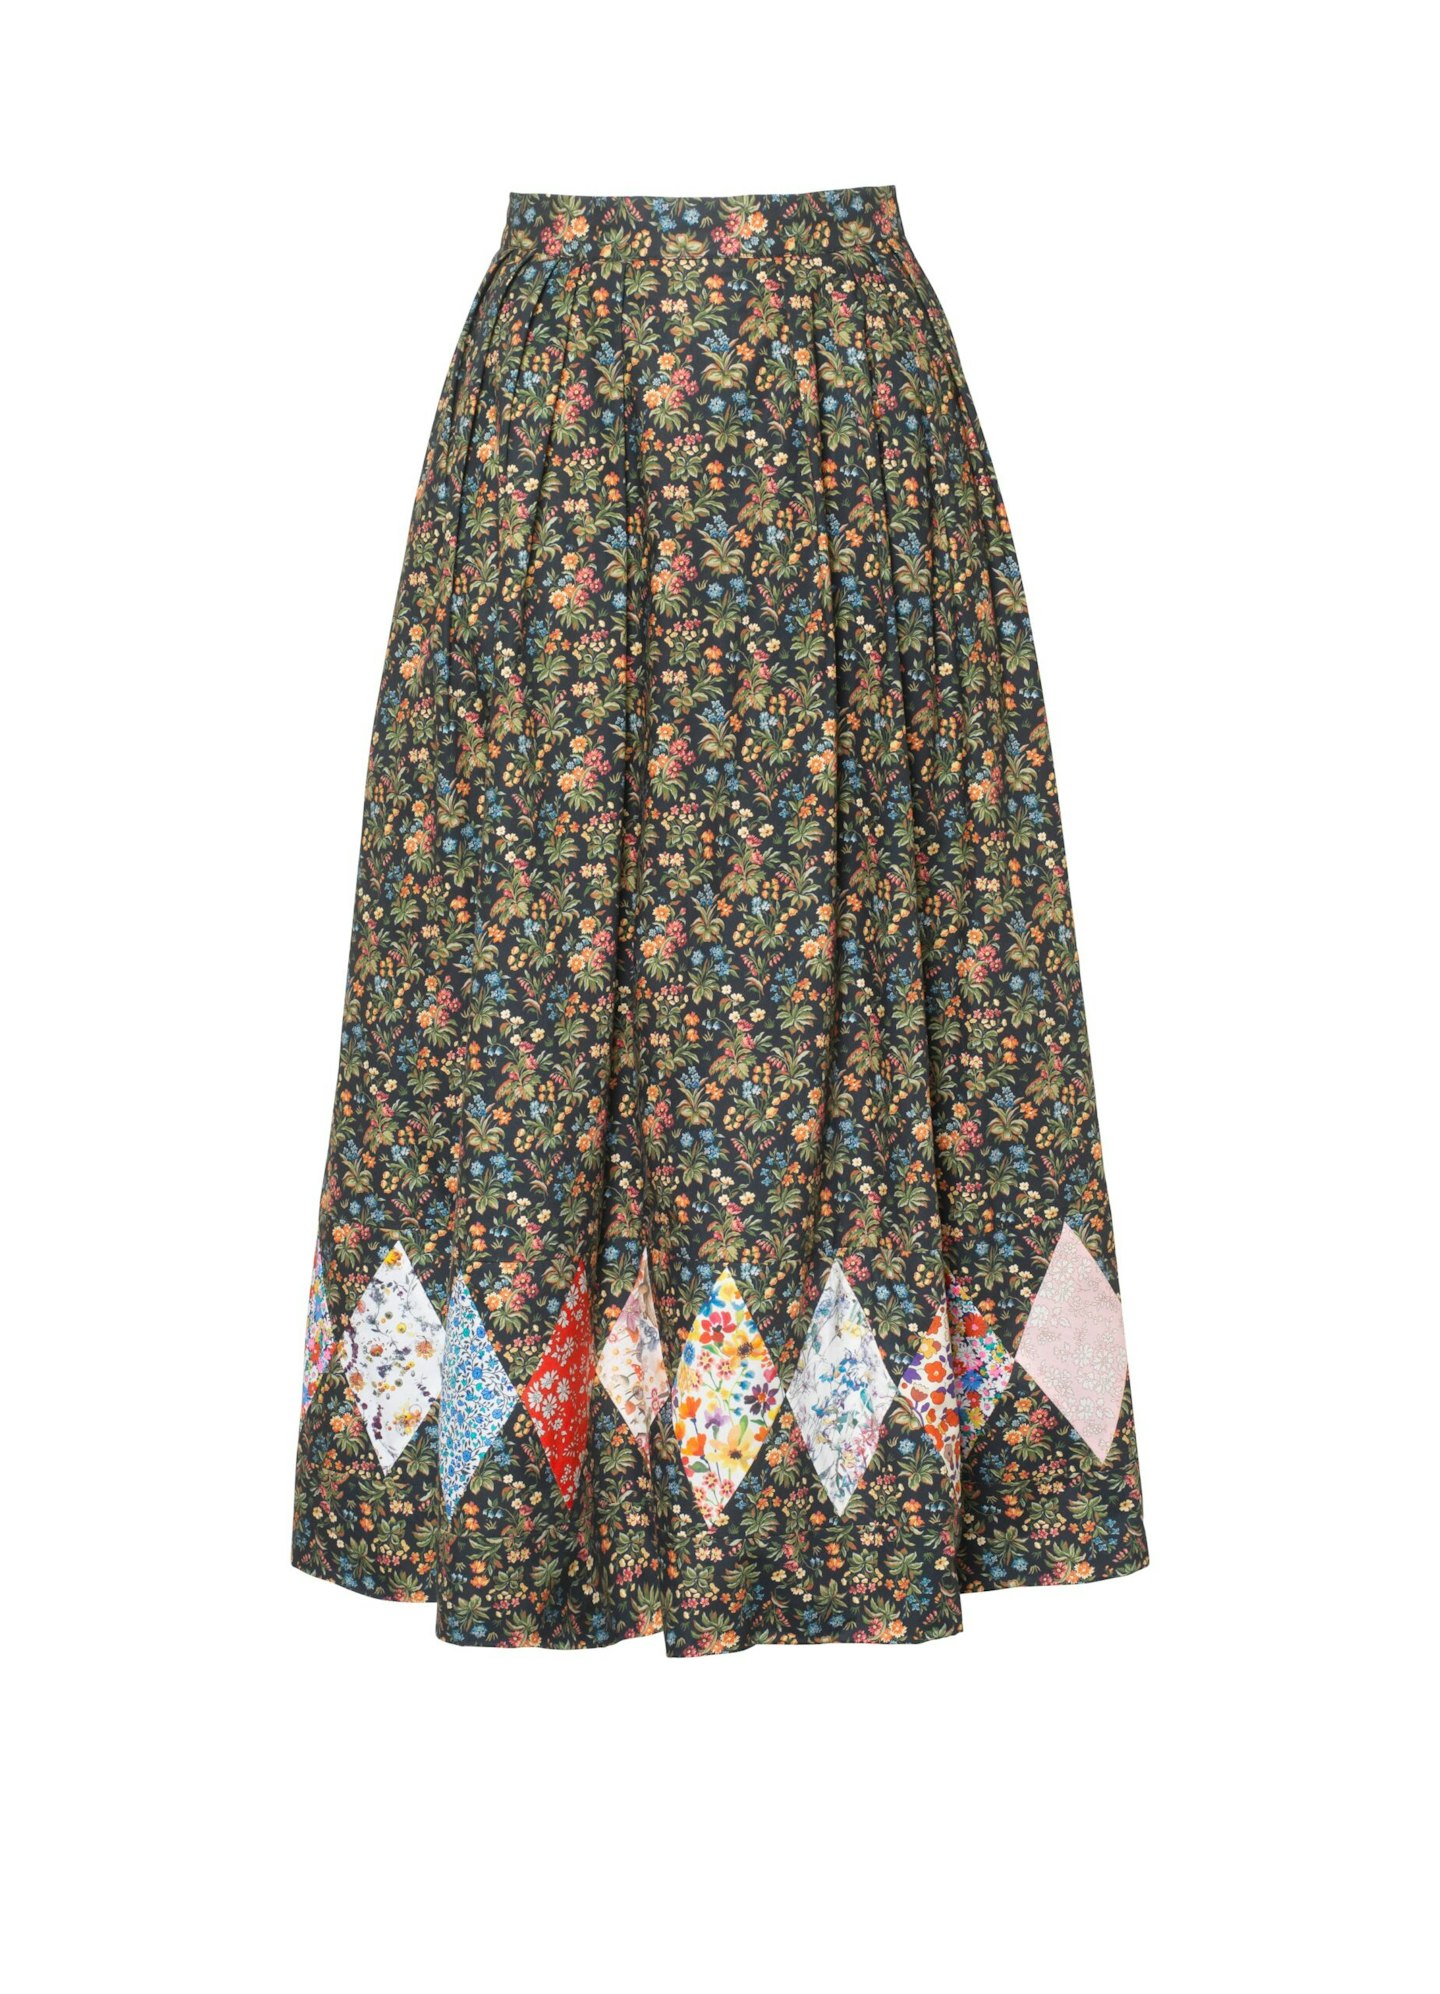 o pioneers dark floral skirt sjp